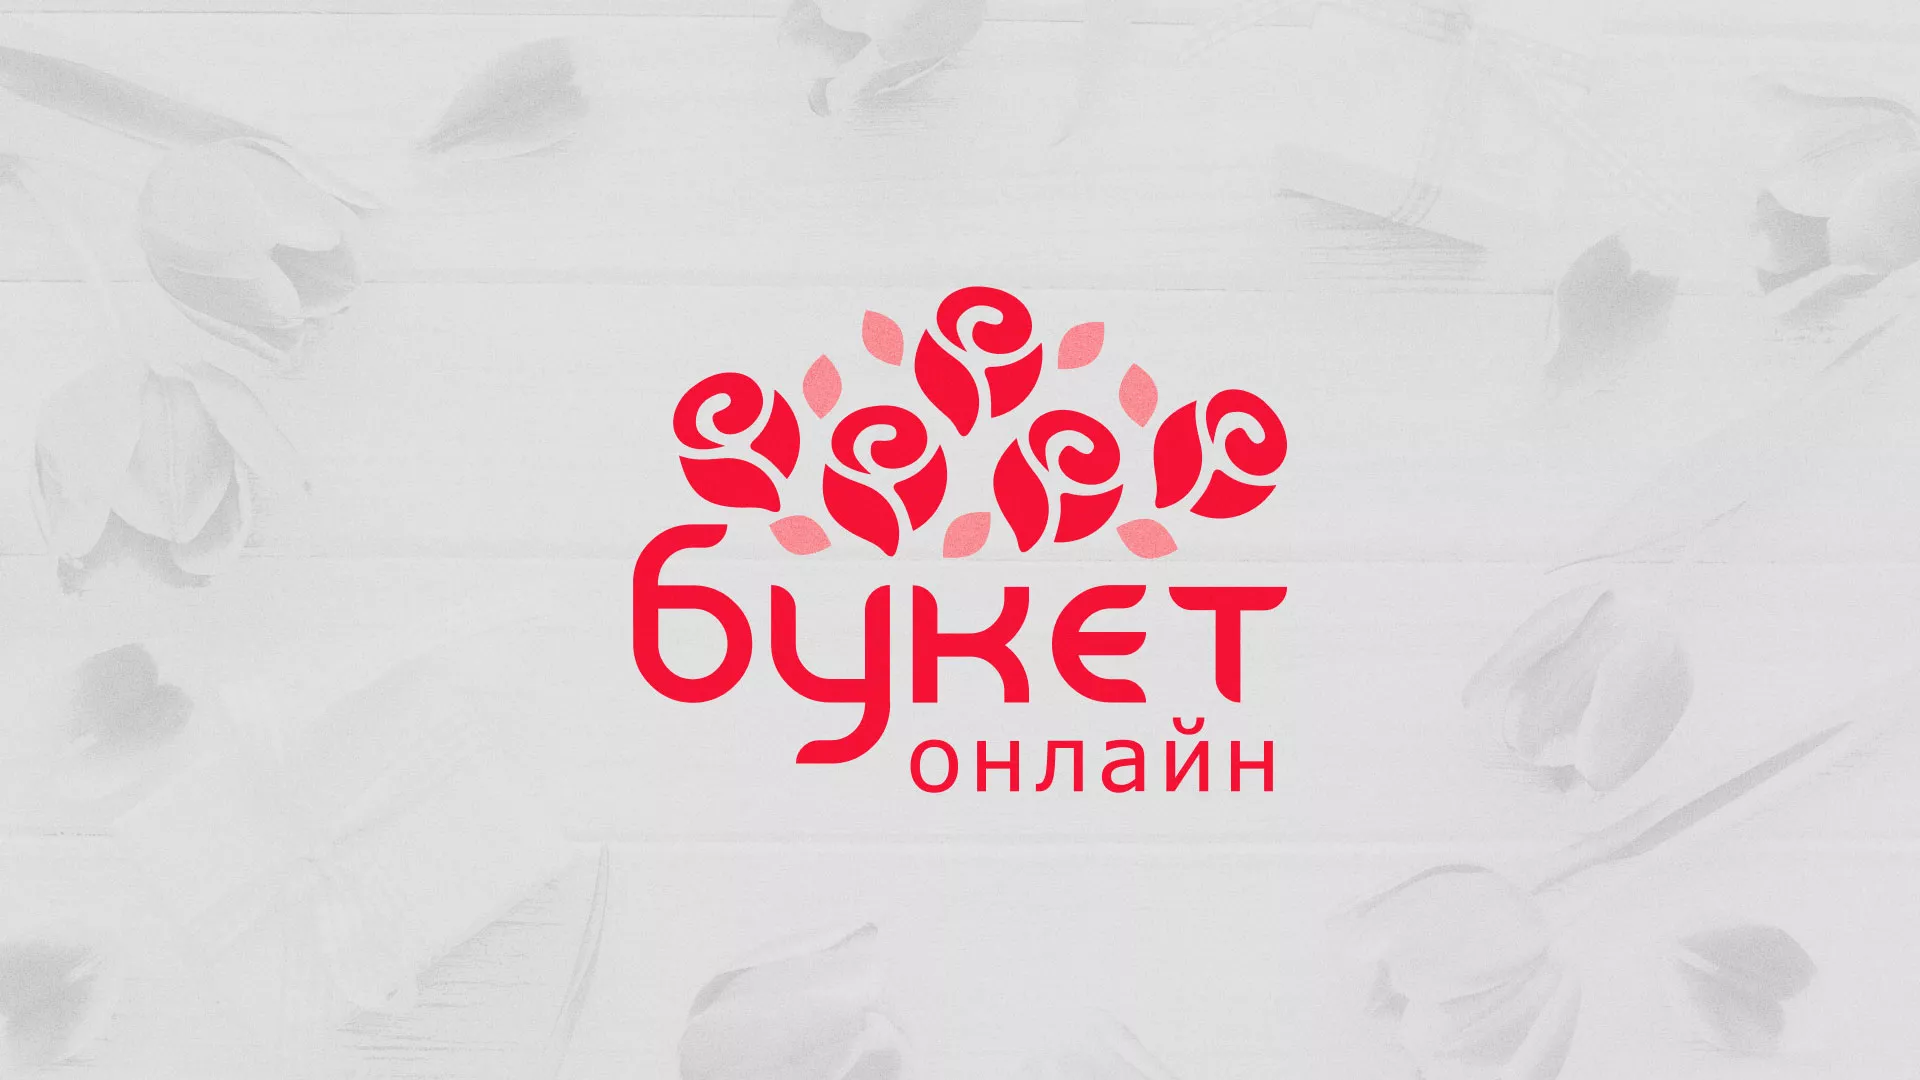 Создание интернет-магазина «Букет-онлайн» по цветам в Медногорске